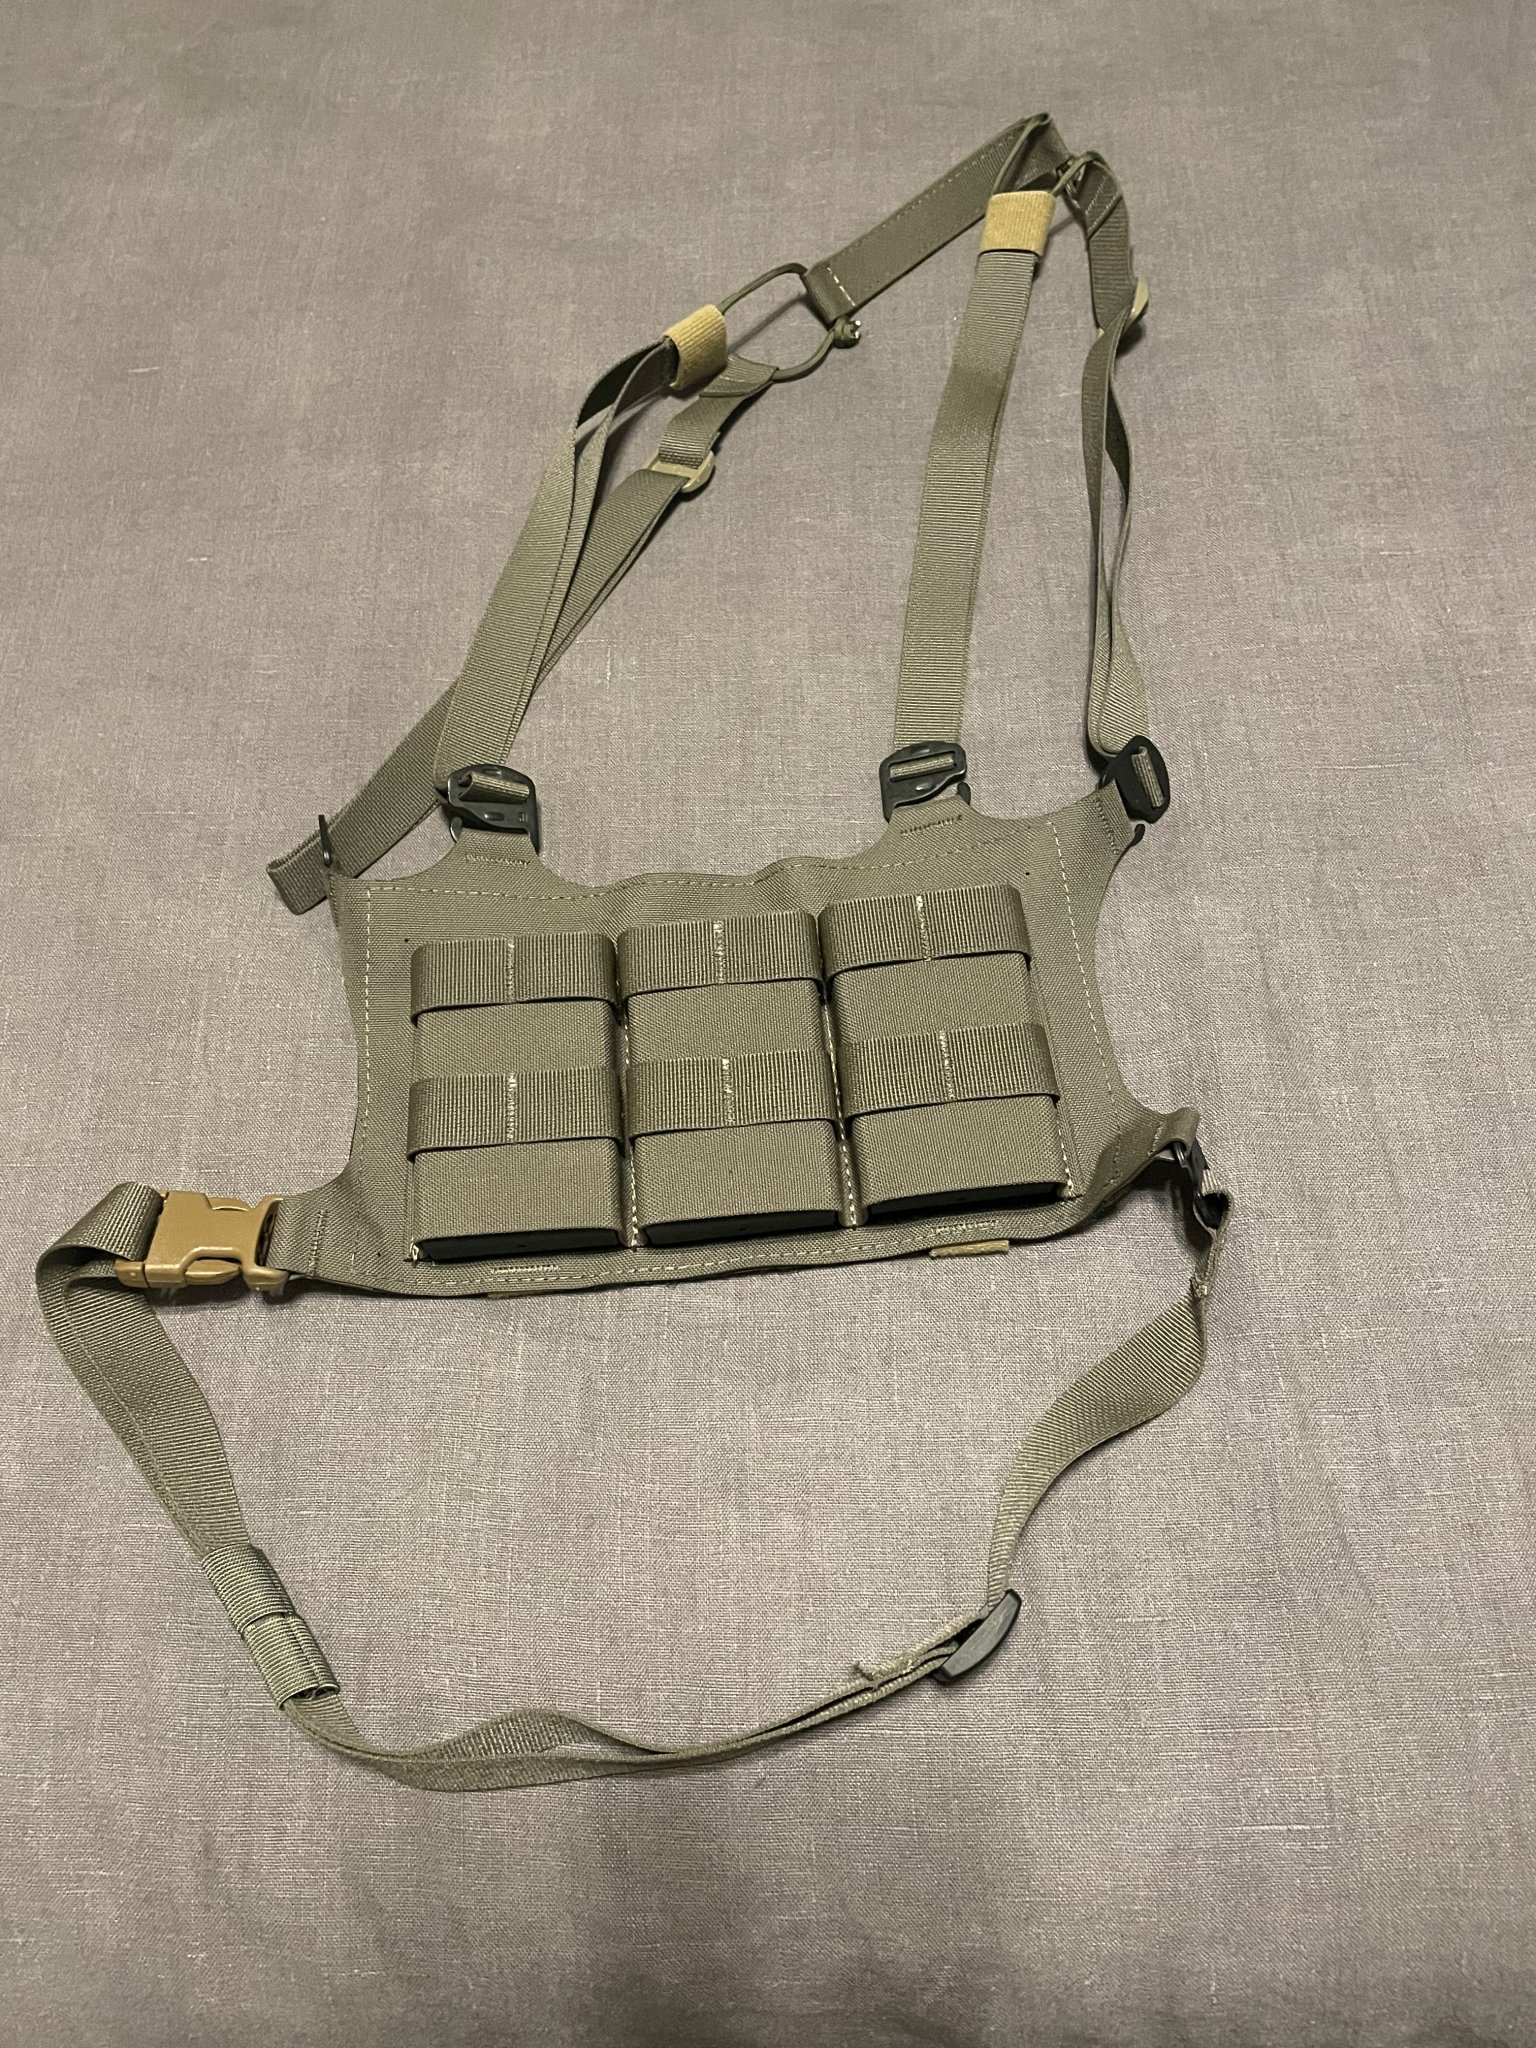 SOLD - Esstac 556 chest rig SOLD | Sniper's Hide Forum